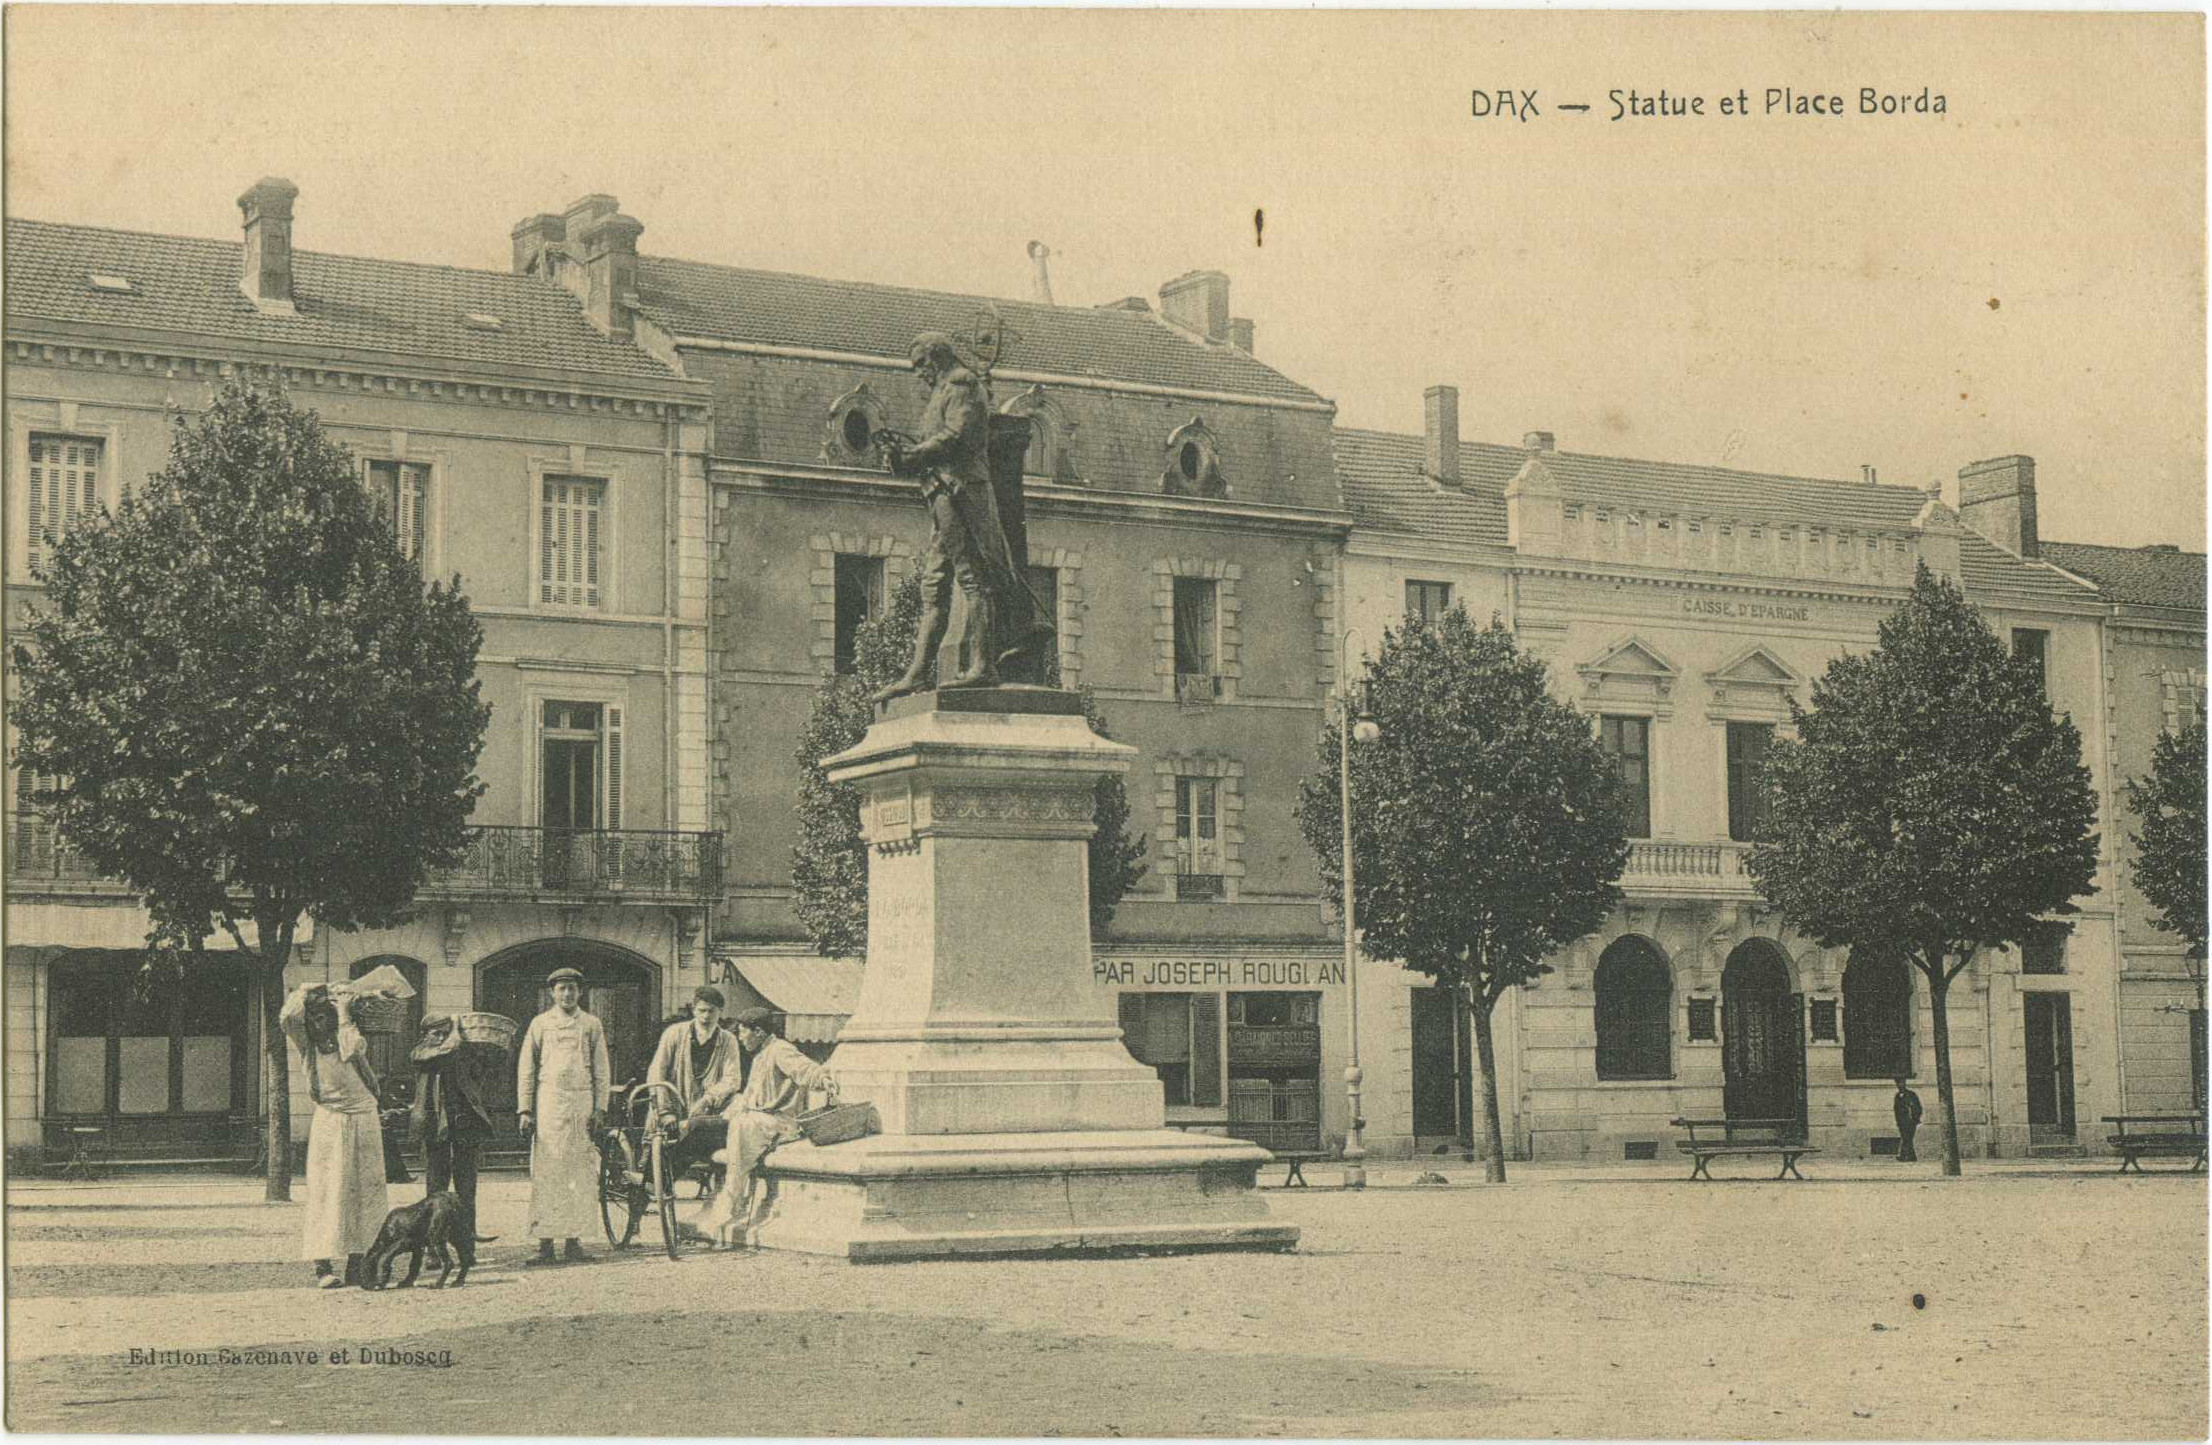 Dax - Statue et Place Borda